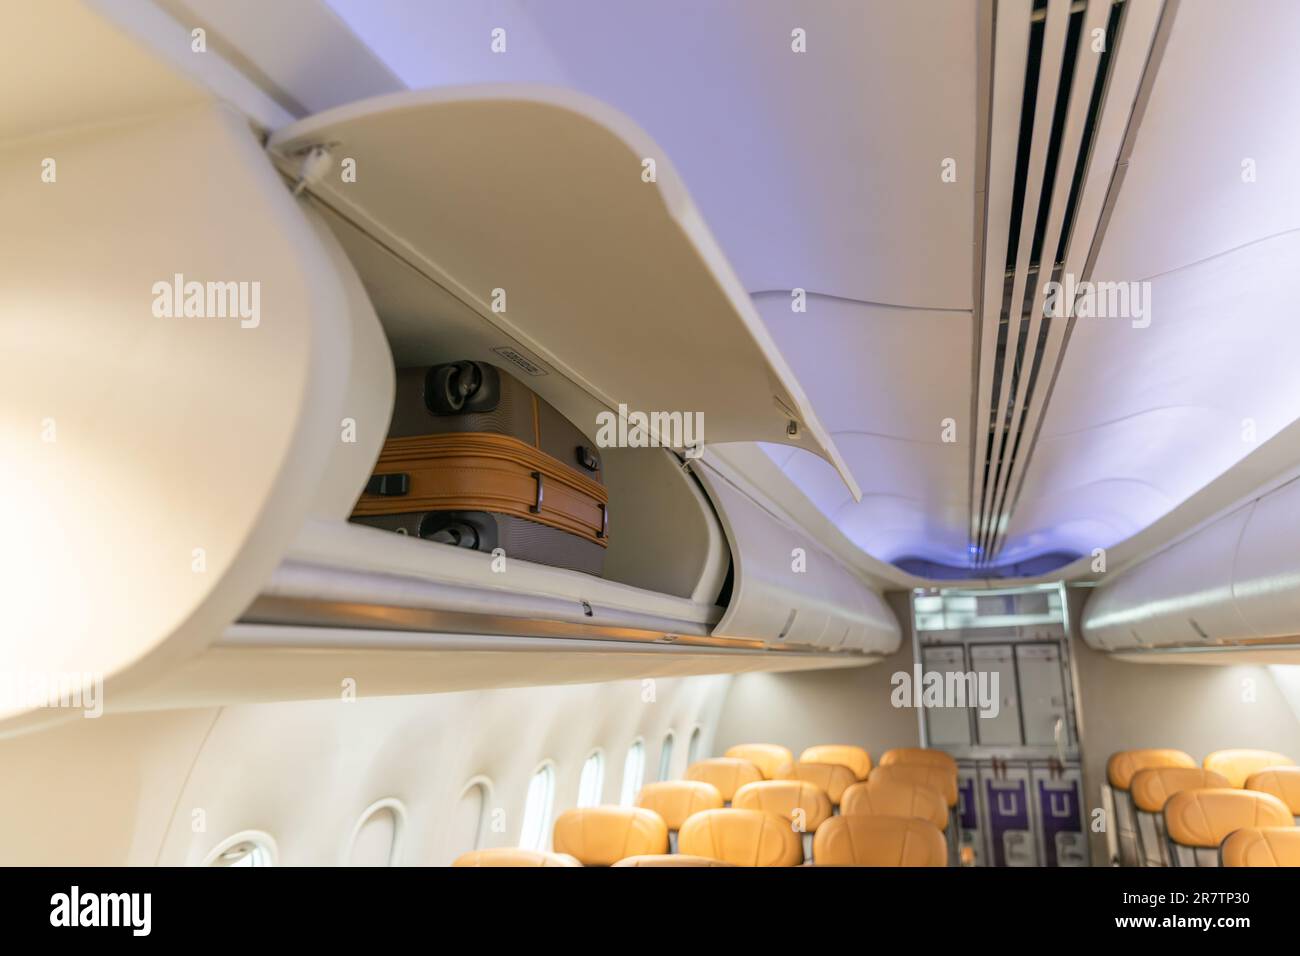 Handgepäck im Flug, Gepäckfach im Gepäckraum im Passagierflugzeug. Stockfoto